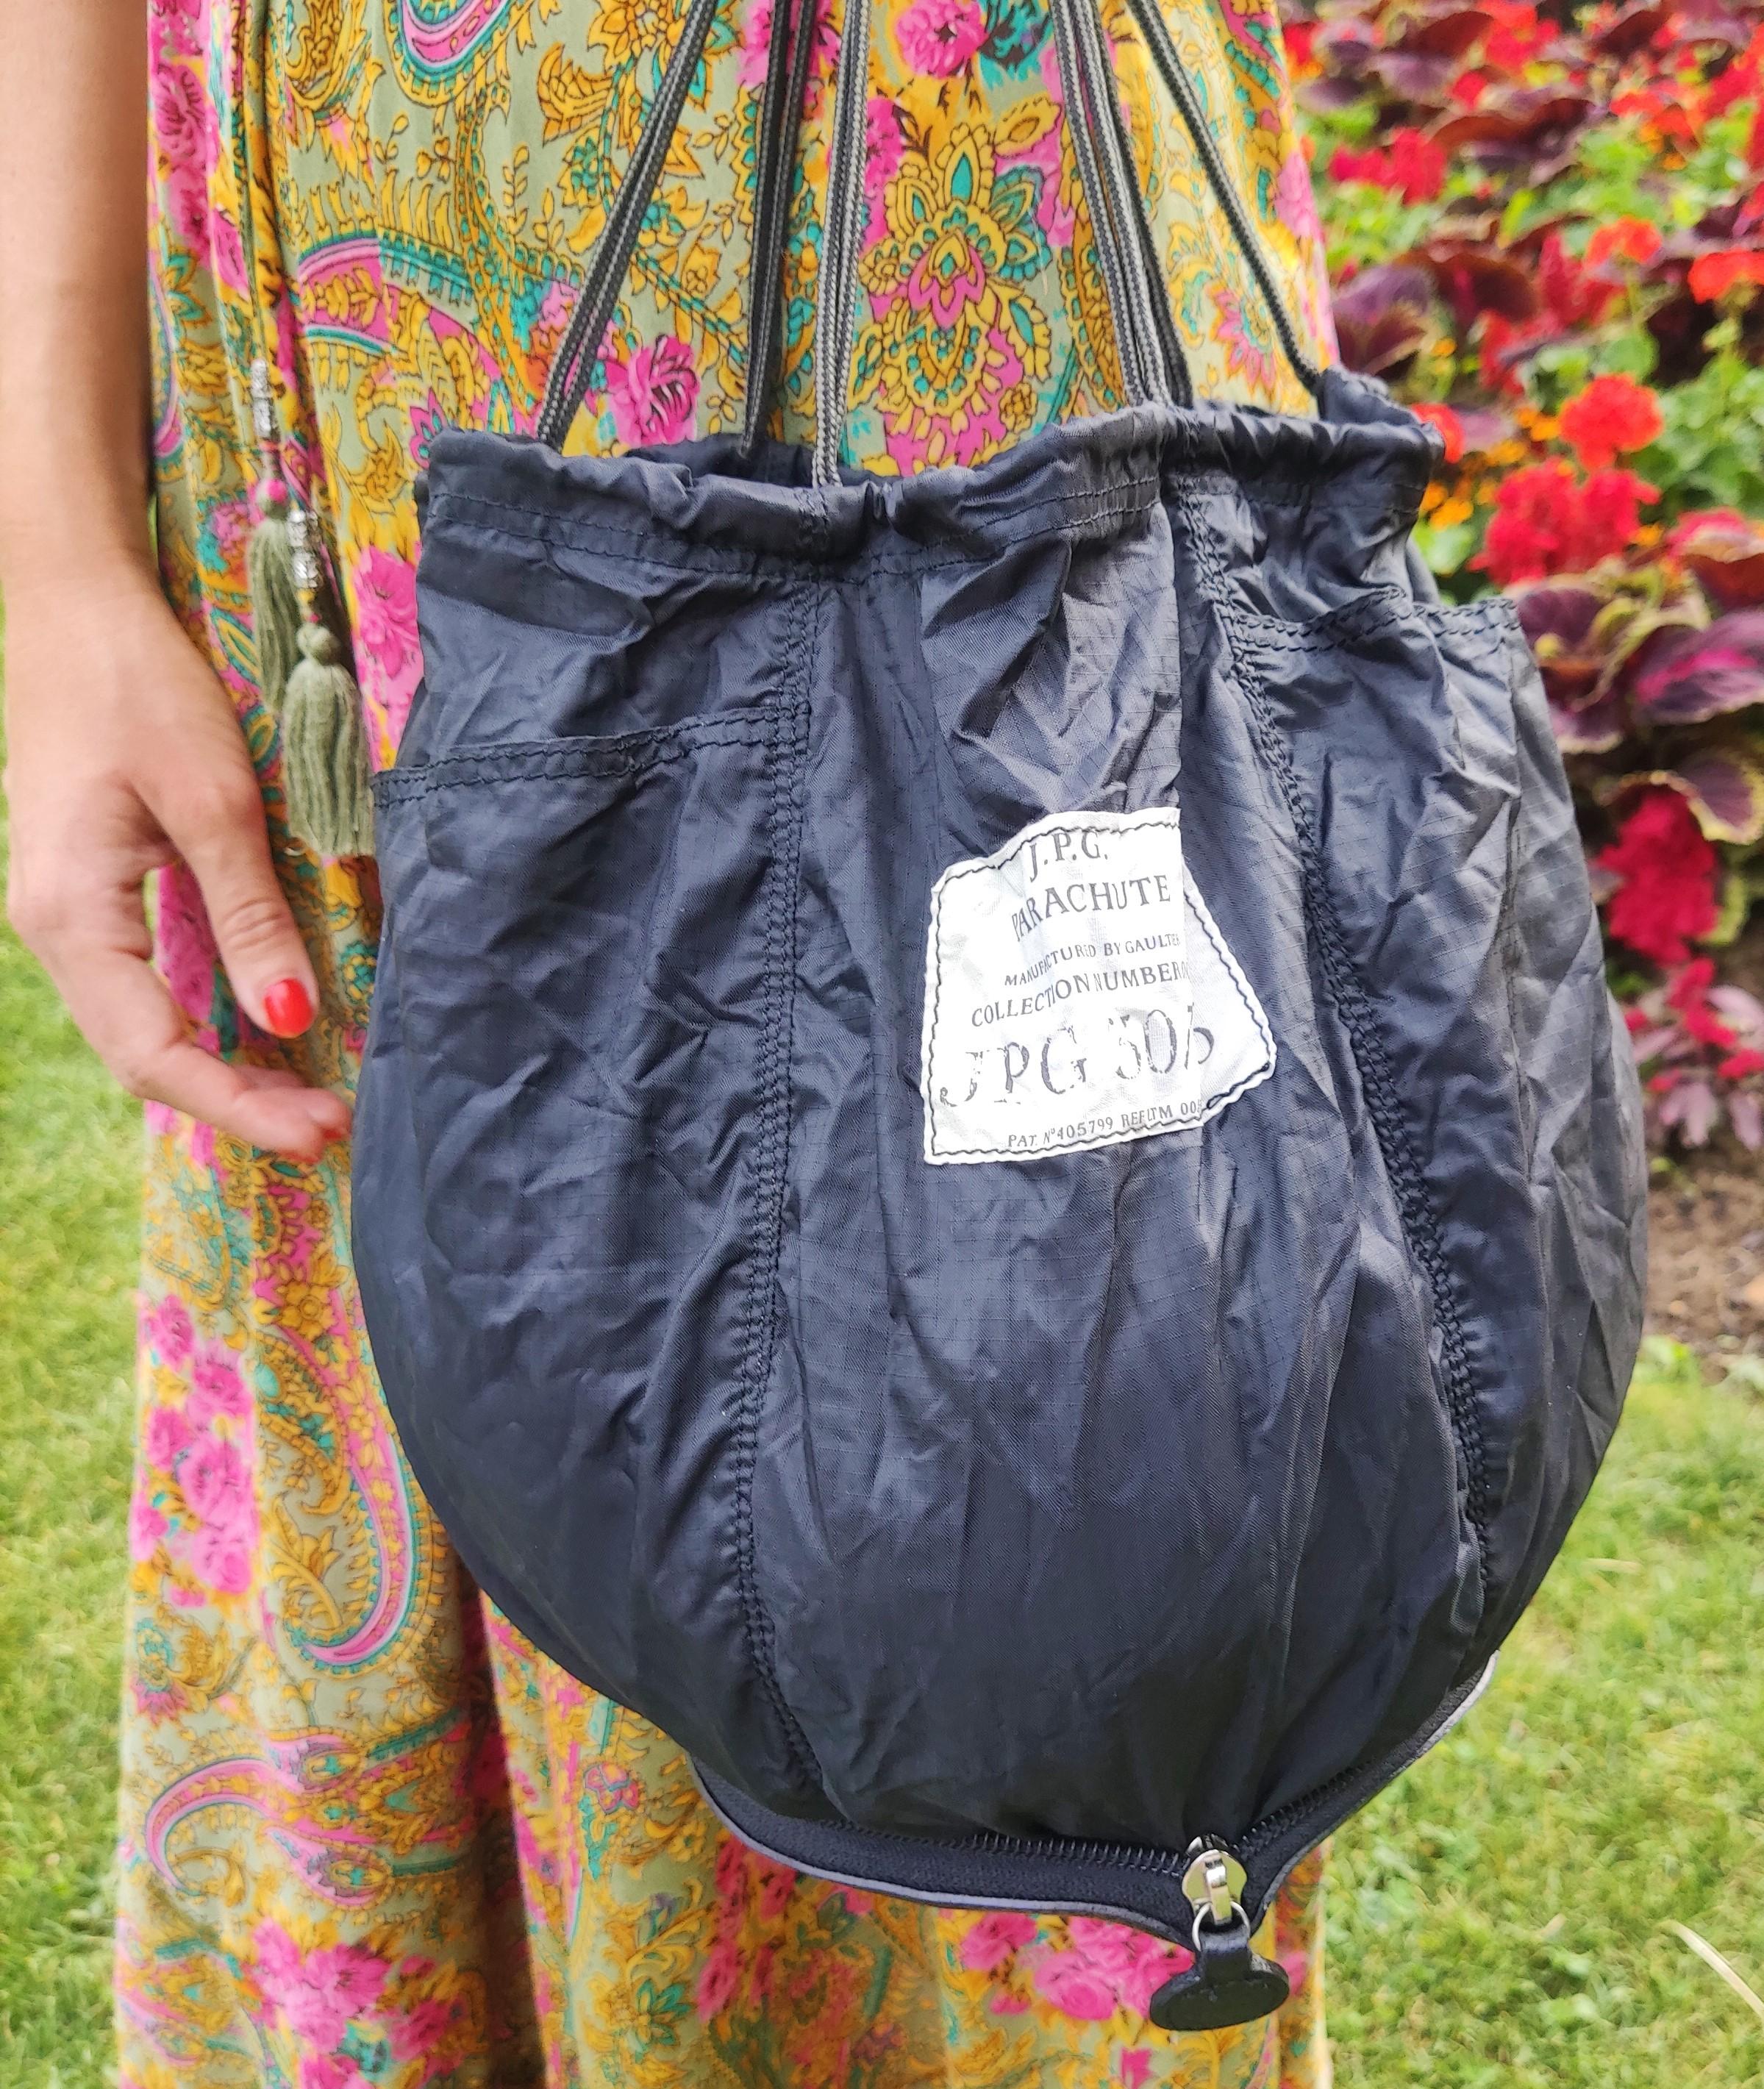 Jean Paul Gaultier Parachute JPG Foldable Transformable Vintage Straps Bag 3